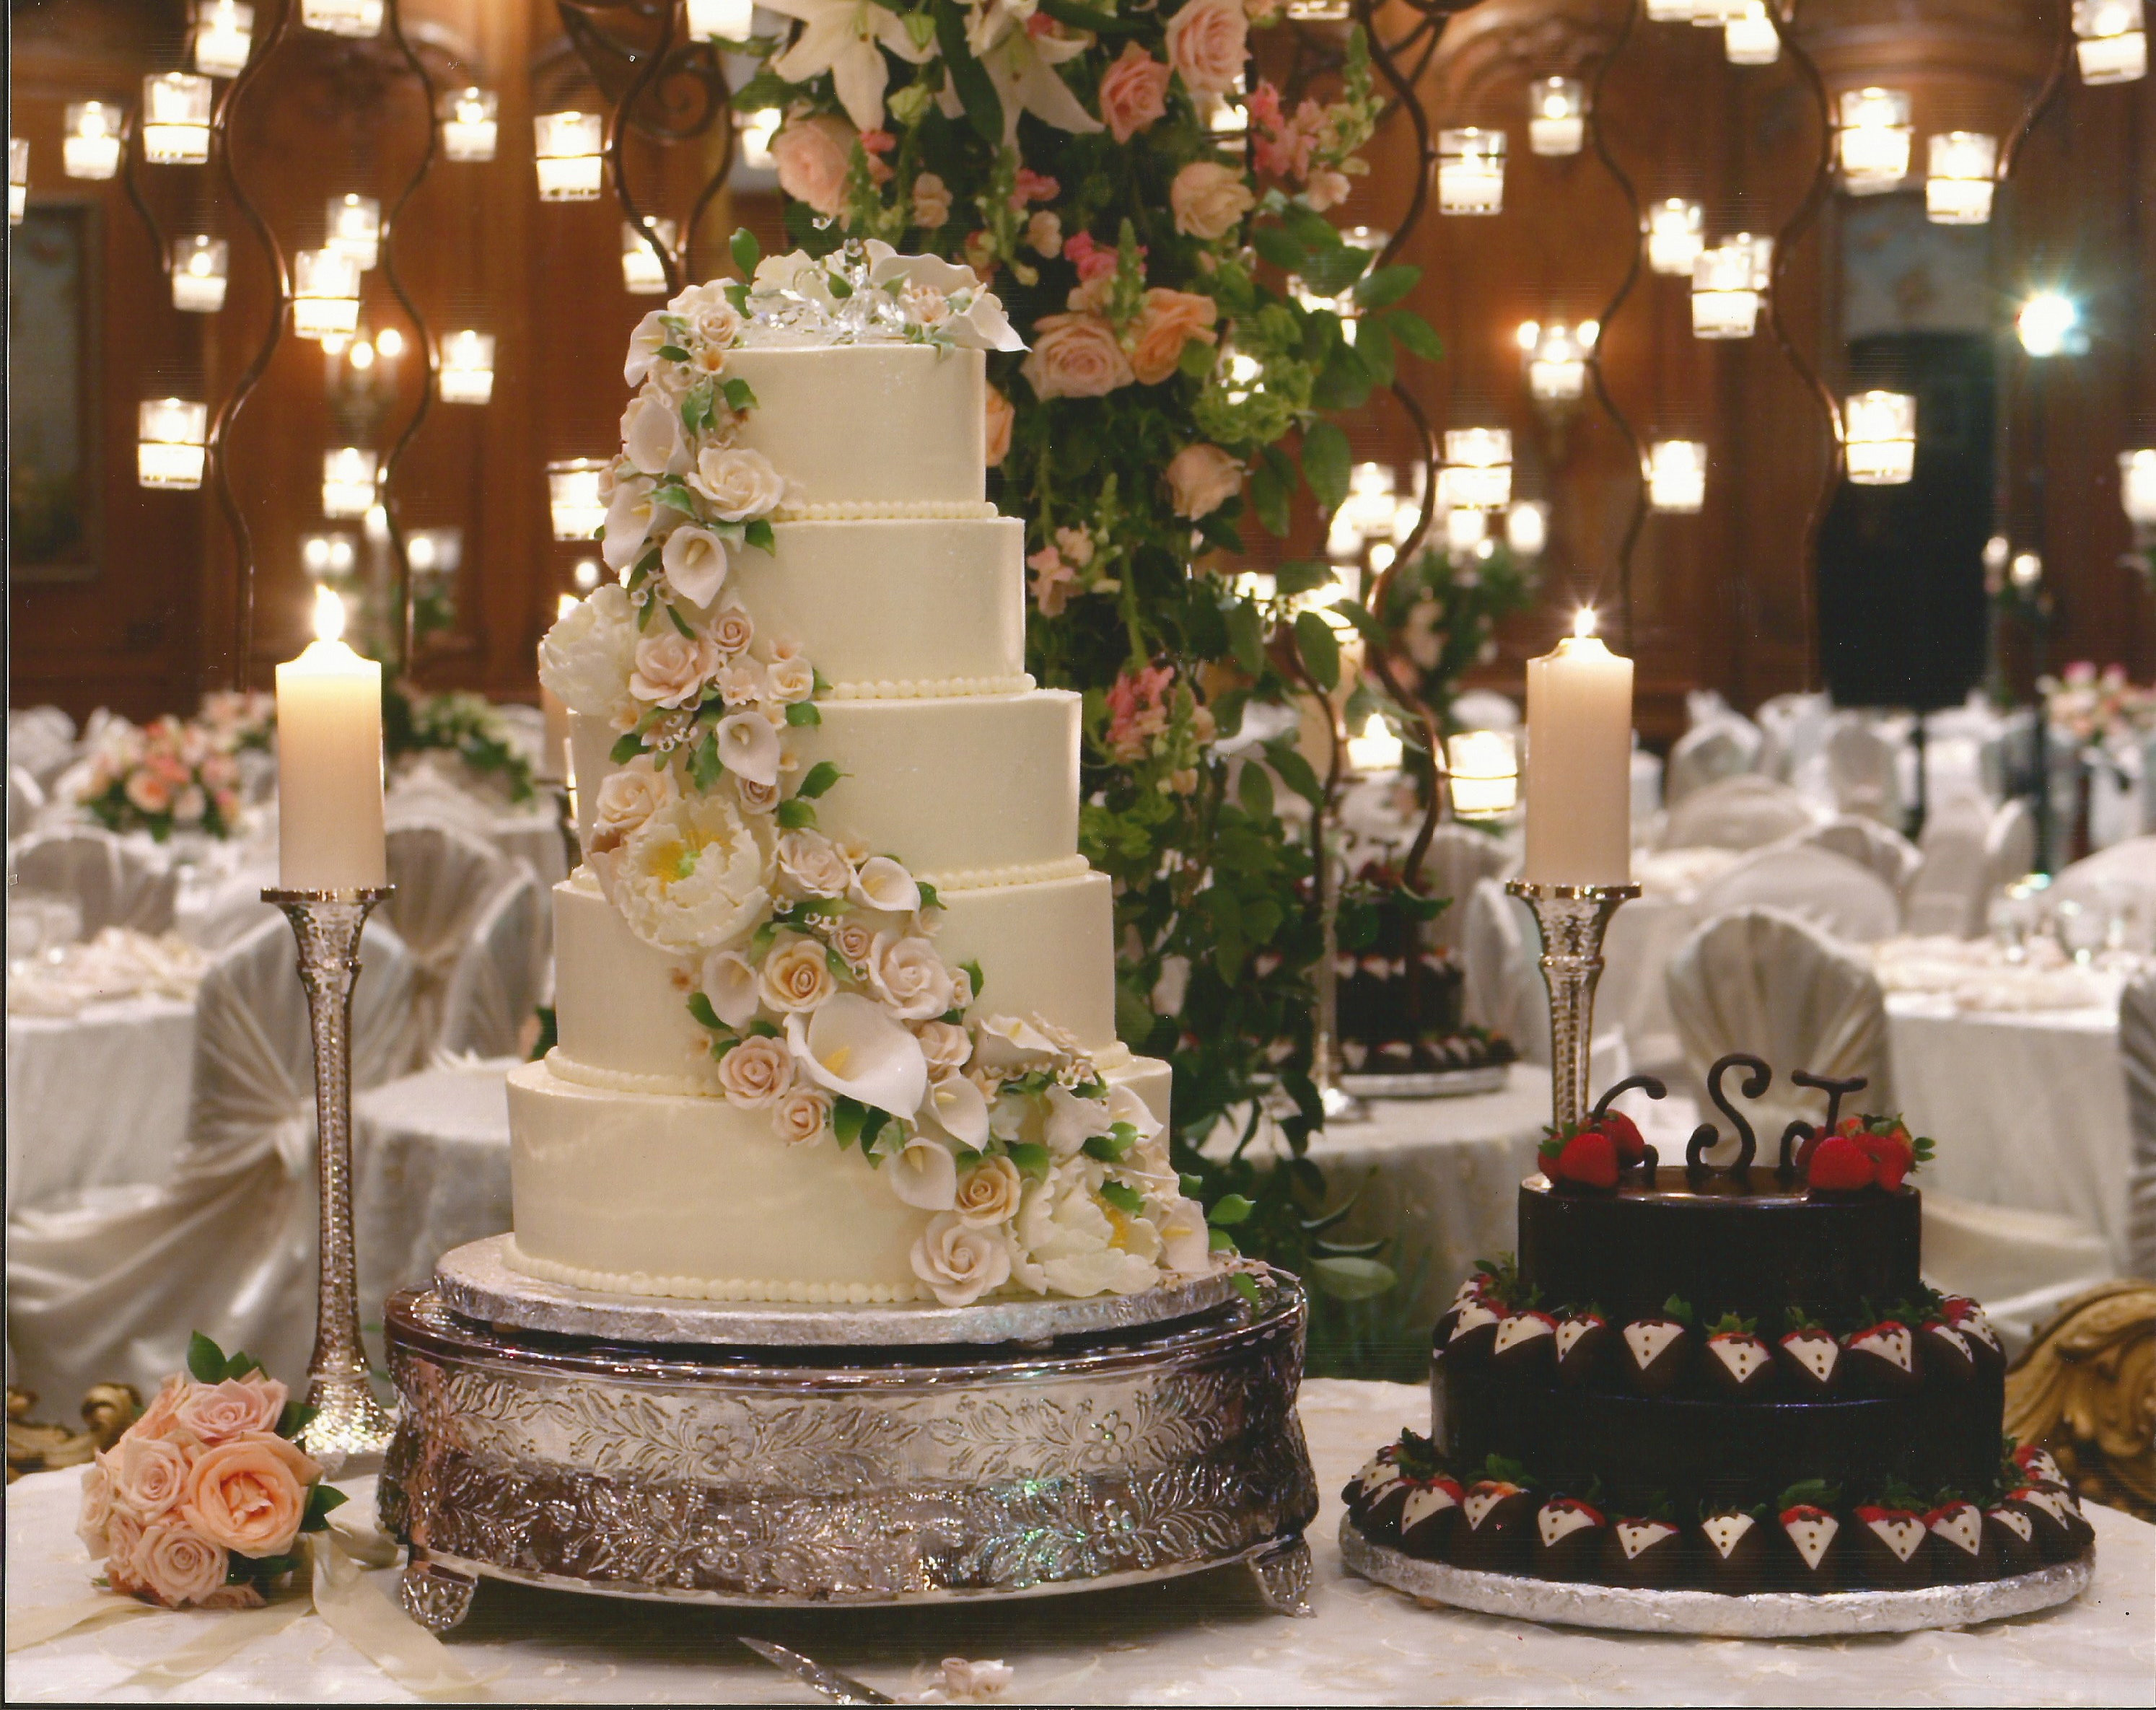 Best Wedding Cakes Houston 20 Ideas for Wedding Cakes Houston Texas